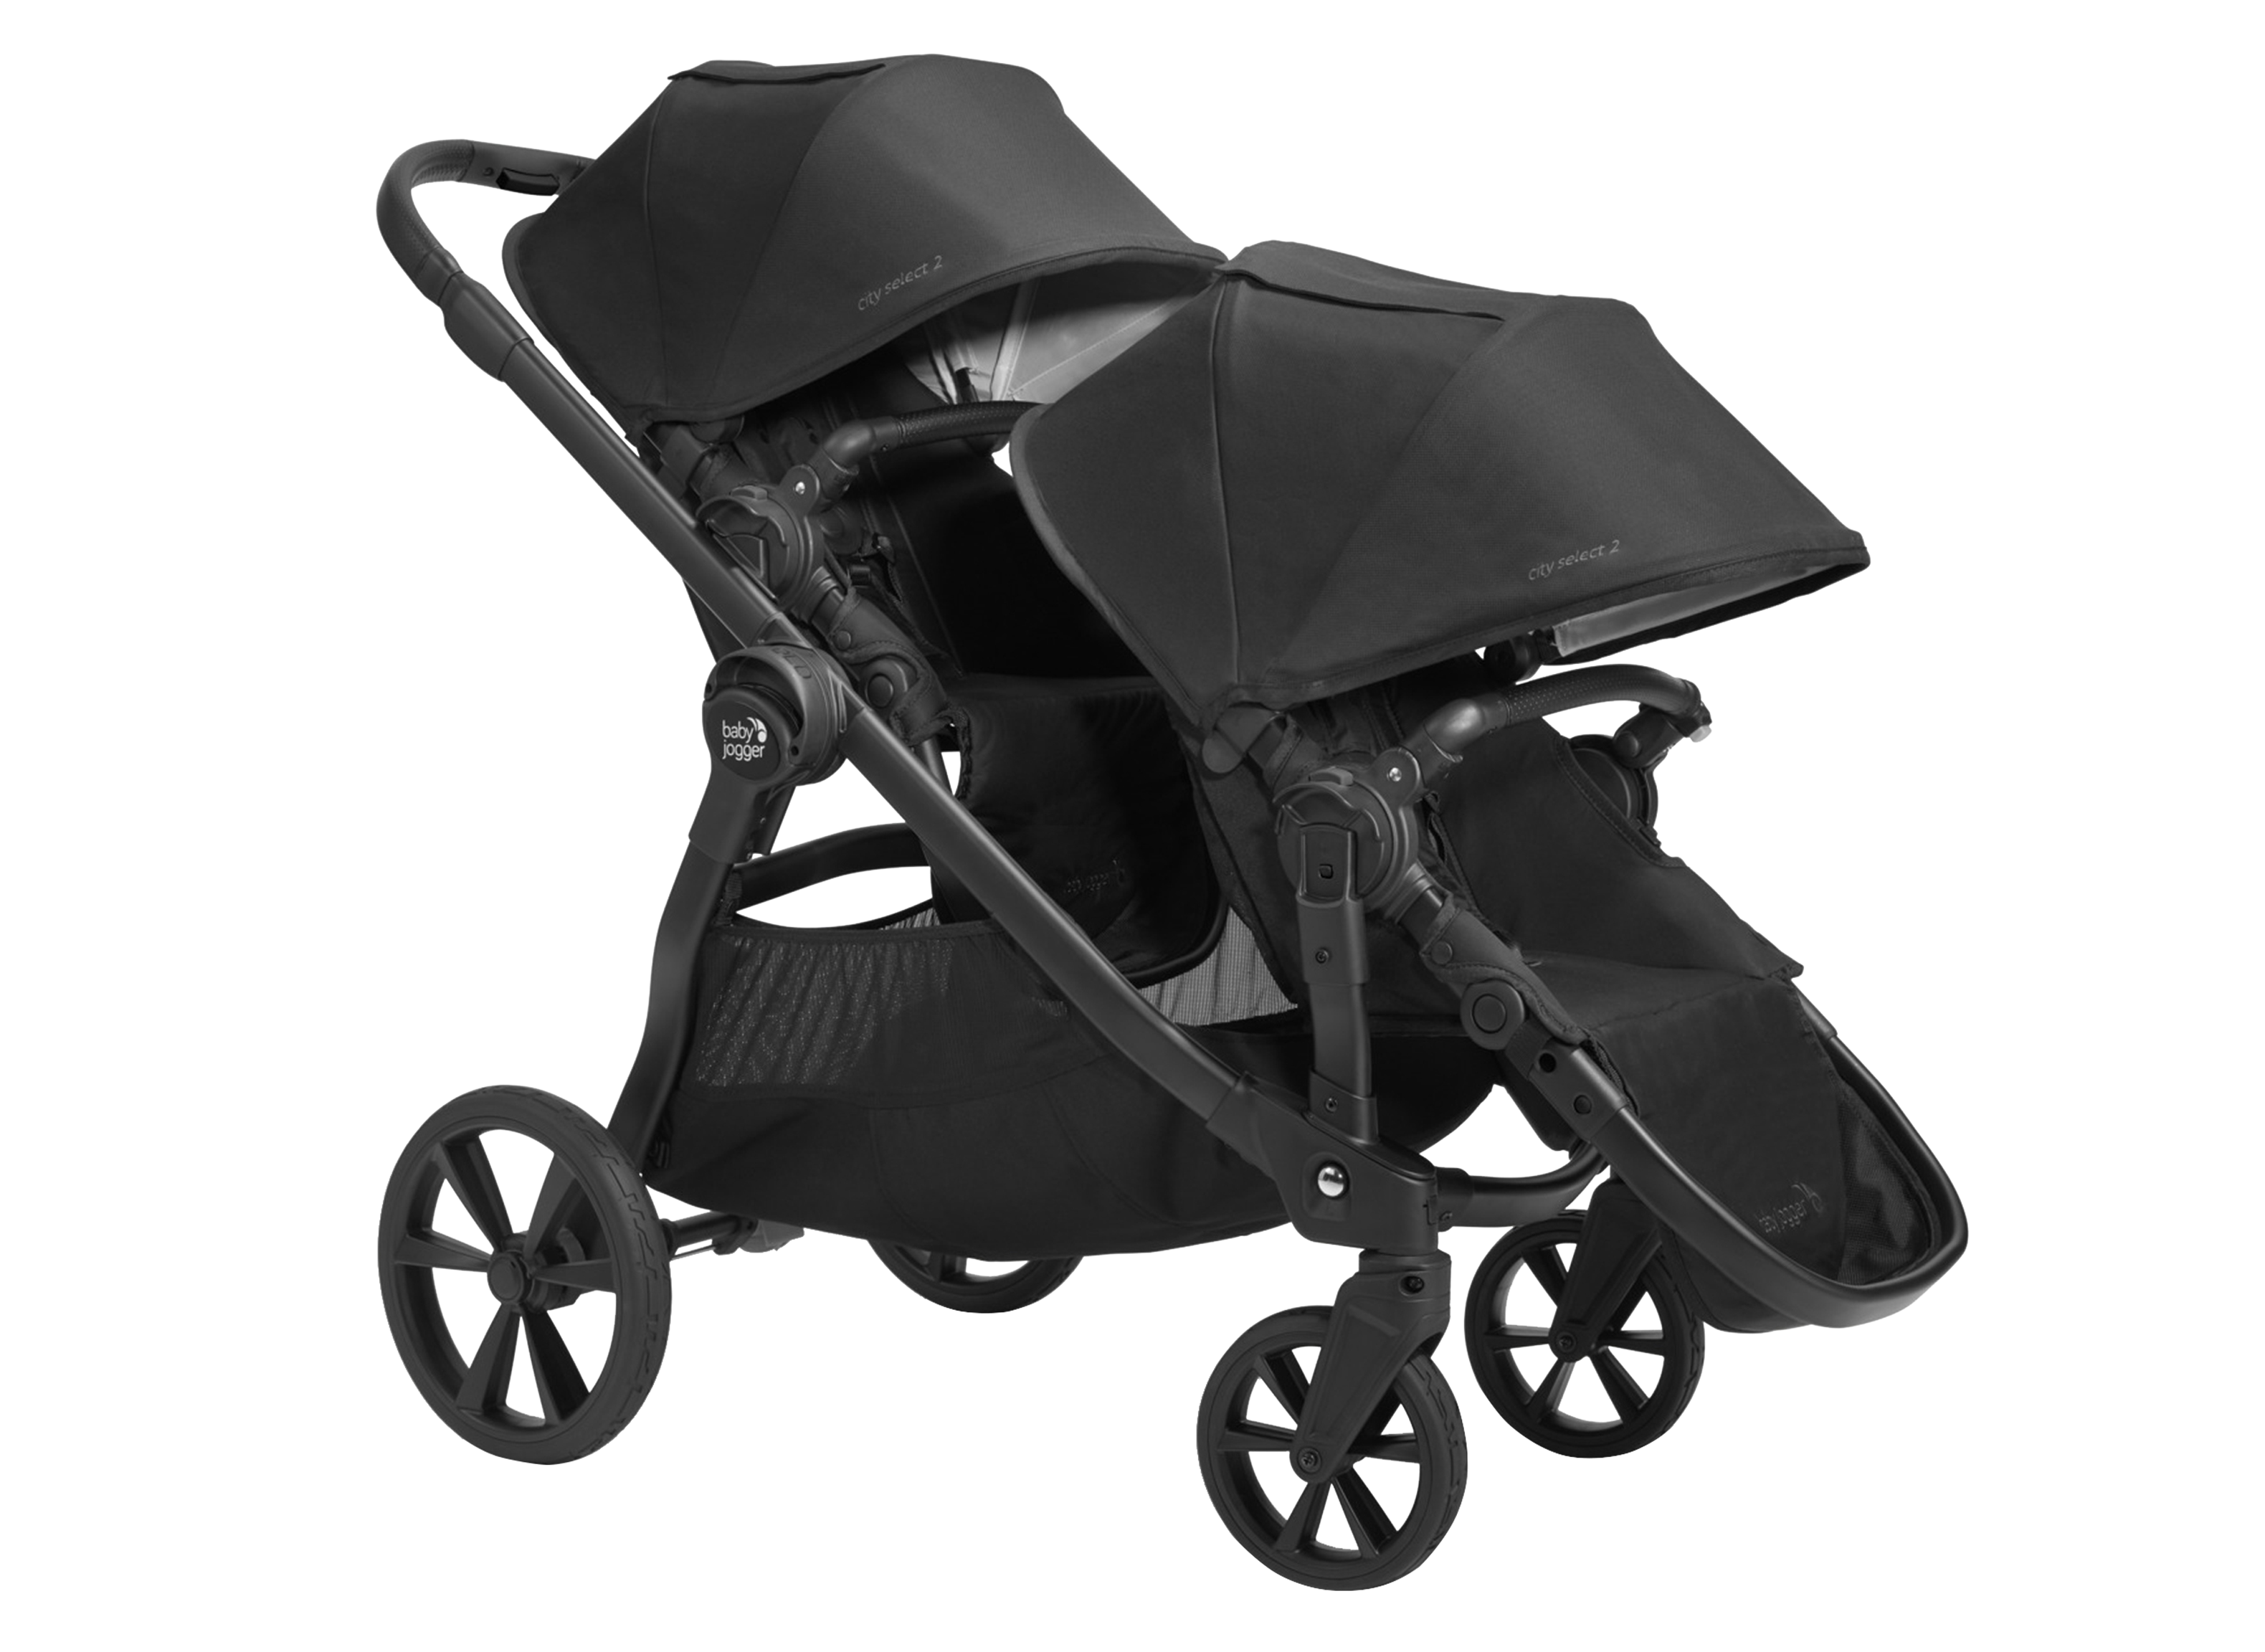 Ledningsevne Nævne Forfølge Baby Jogger City Select® 2 Stroller Review - Consumer Reports